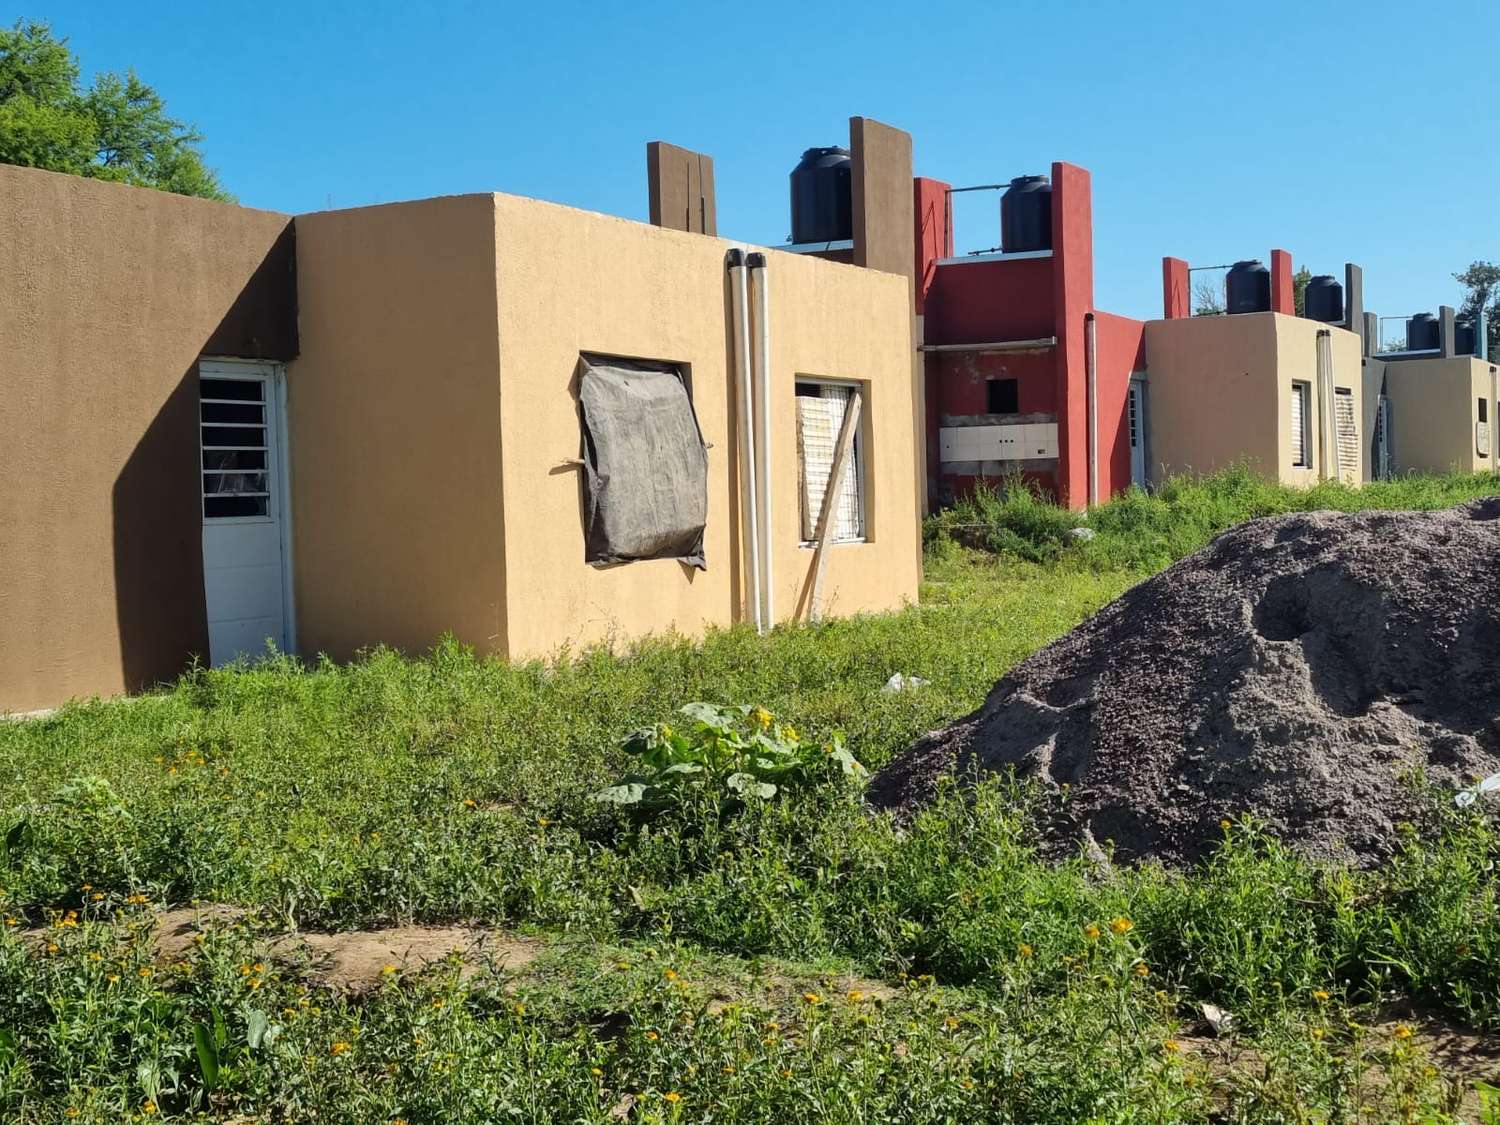 84 viviendas: qué medidas tomó la fiscal Viviani para evaluar la situación de los ocupantes de las casas